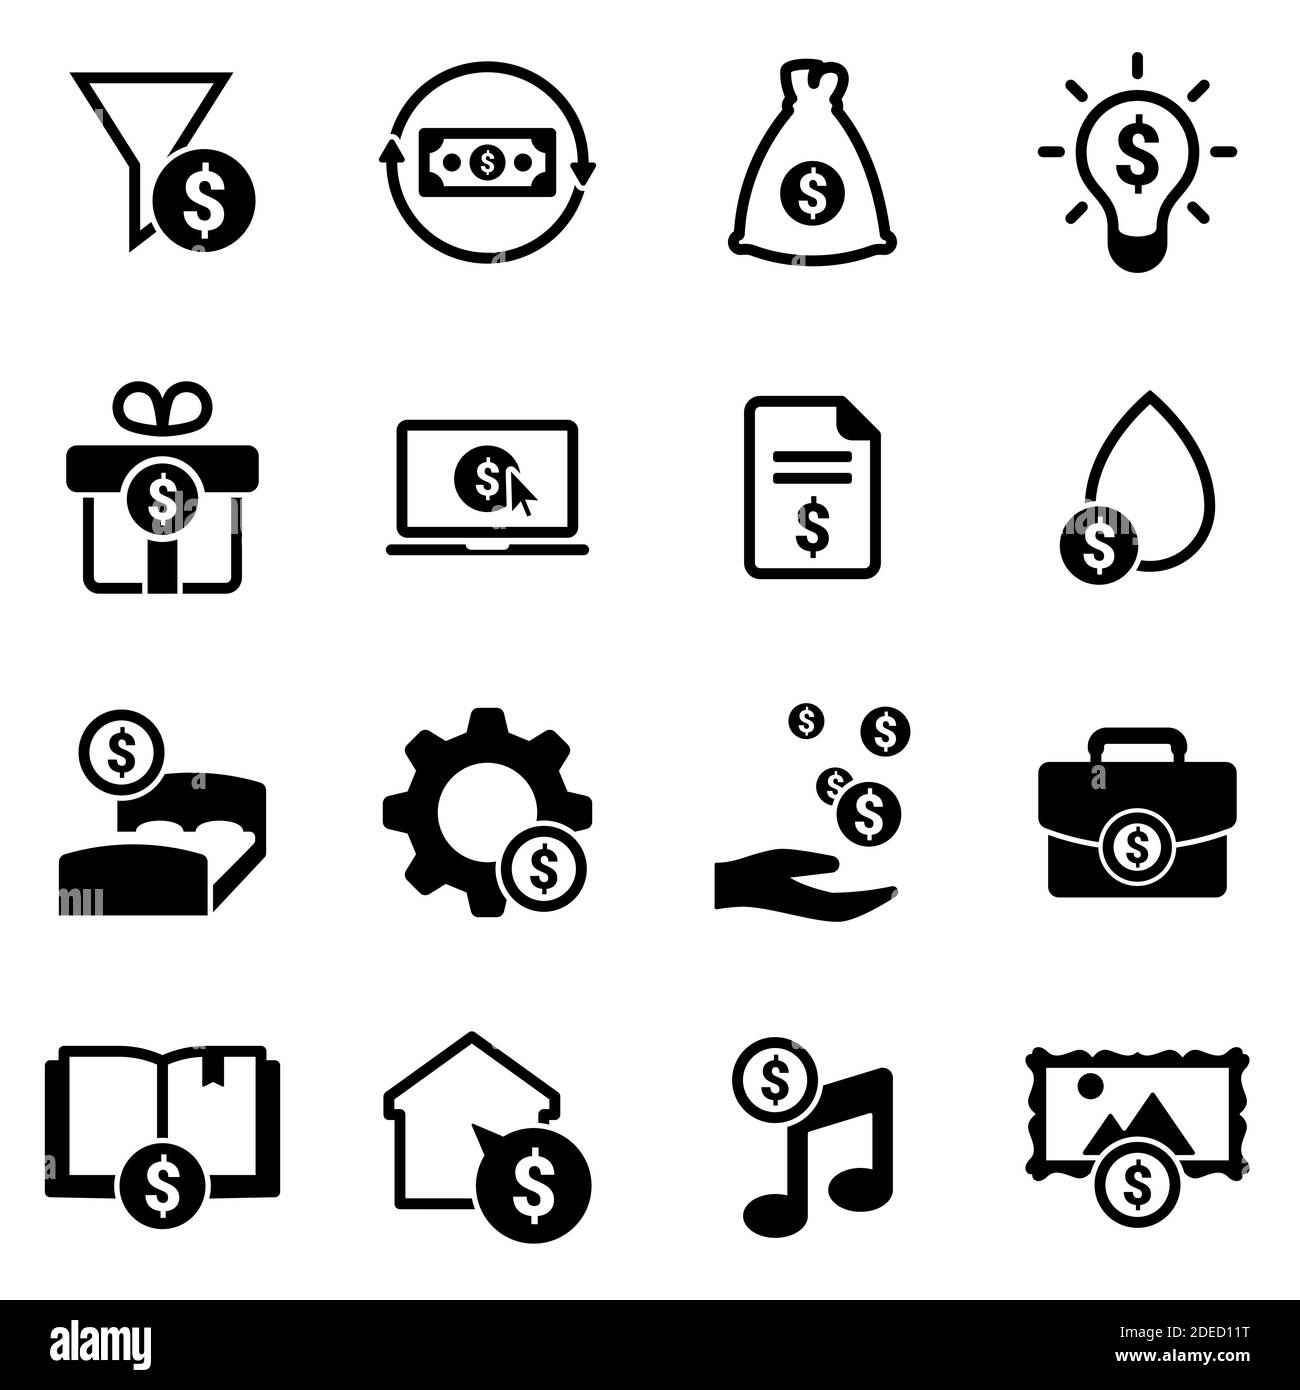 Insieme di icone semplici su un tema reddito passivo, vettore, disegno, collezione, piatto, segno, simbolo, elemento, oggetto, illustrazione, isolato. Sfondo bianco Illustrazione Vettoriale